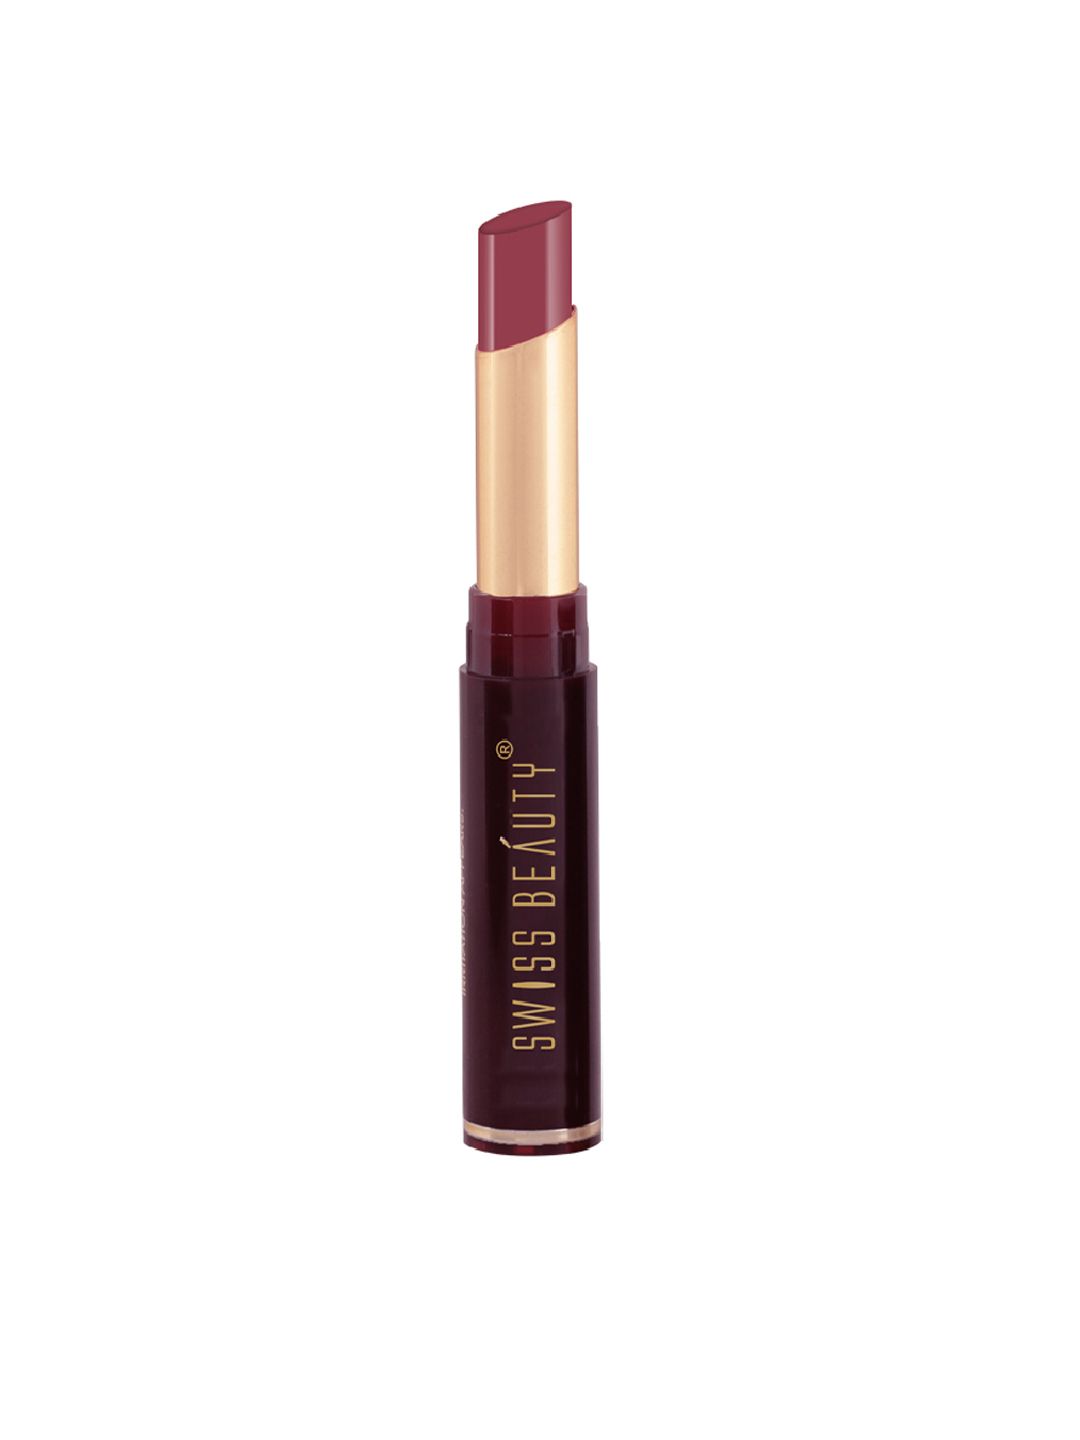 SWISS BEAUTY Non-Transfer Matte Lipstick -Mauve Blush, 2g Price in India